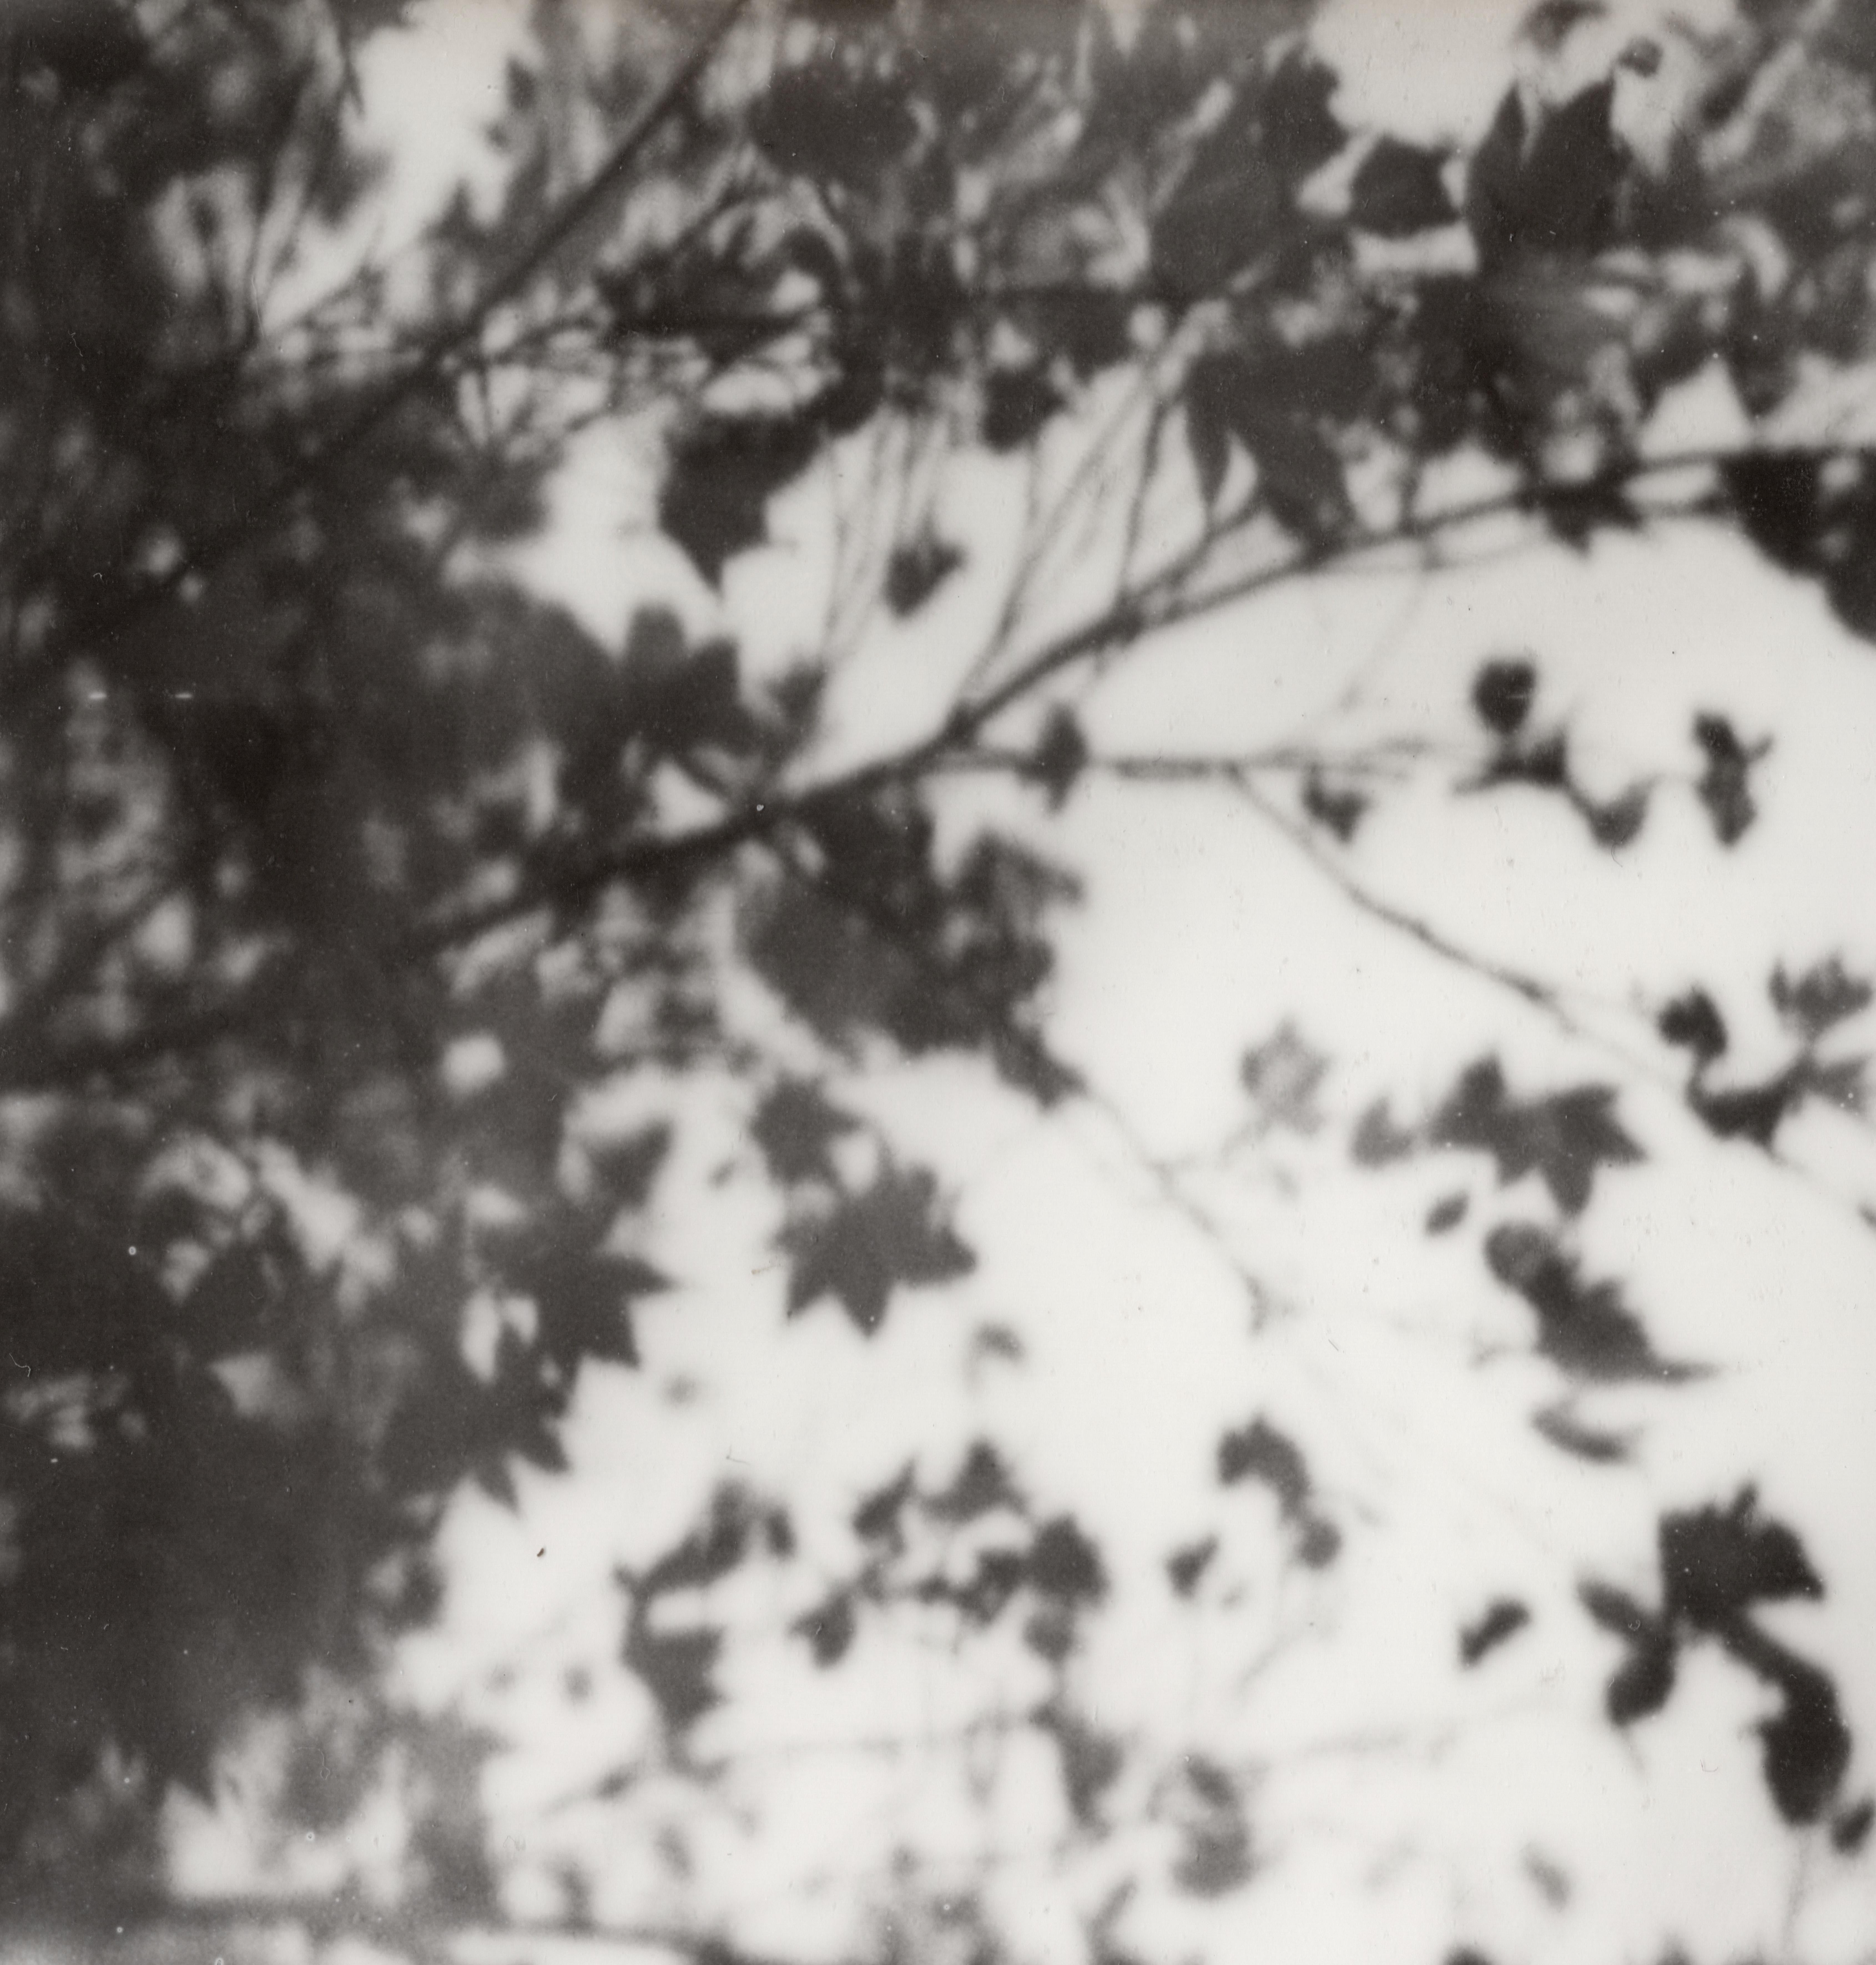 Abstract Photograph Pia Clodi - Trois rêves - Nature morte en noir et blanc Tirage photographique sur film encadré